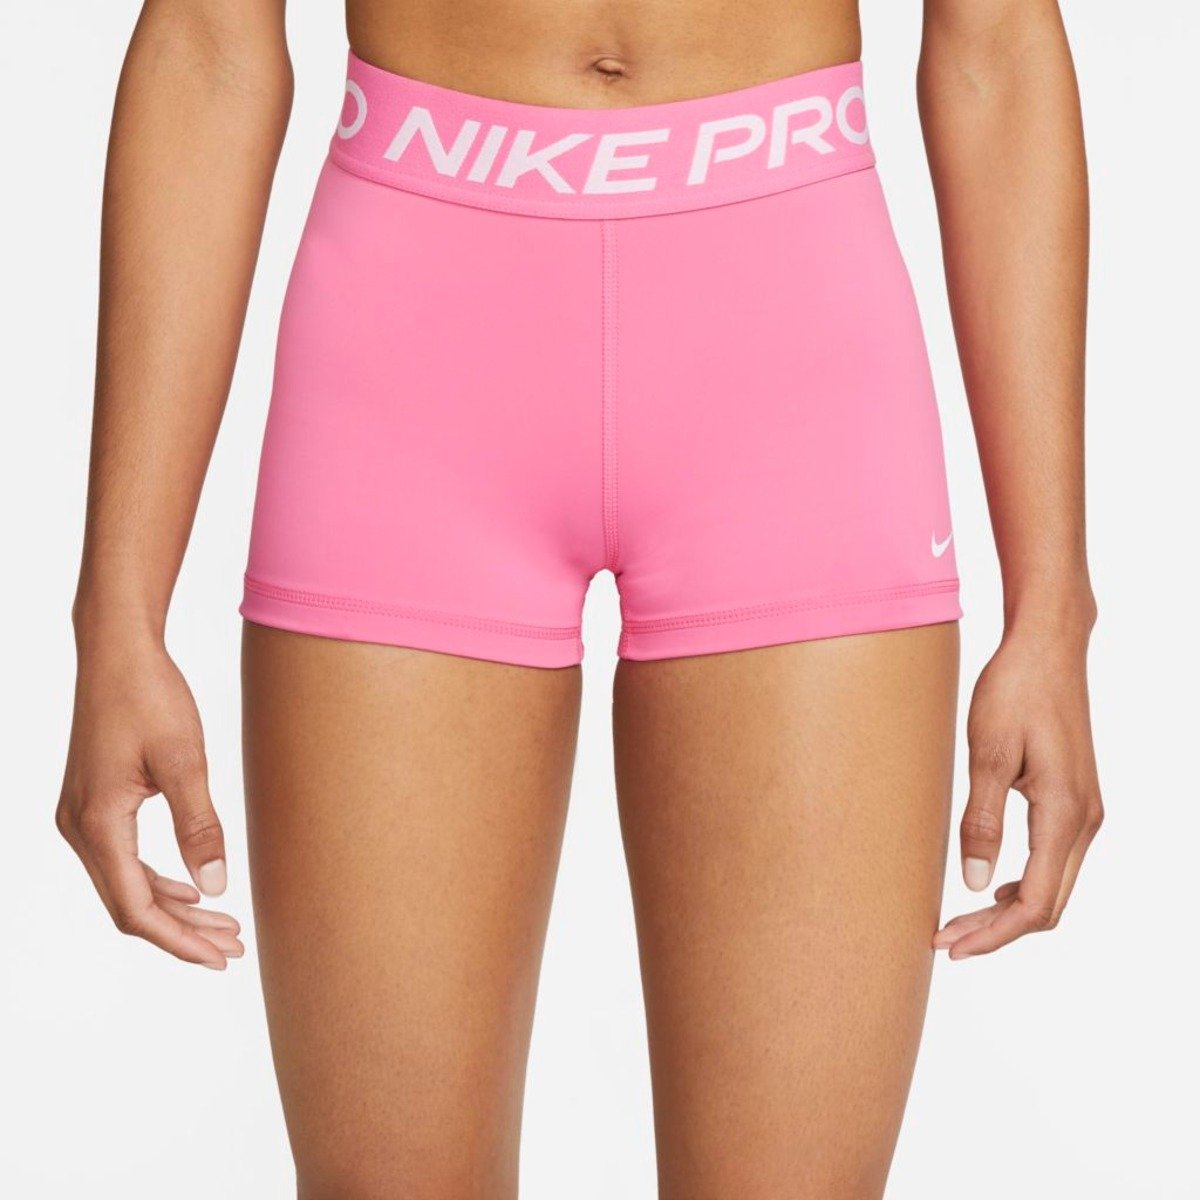 Calções Nike Pro para mulher